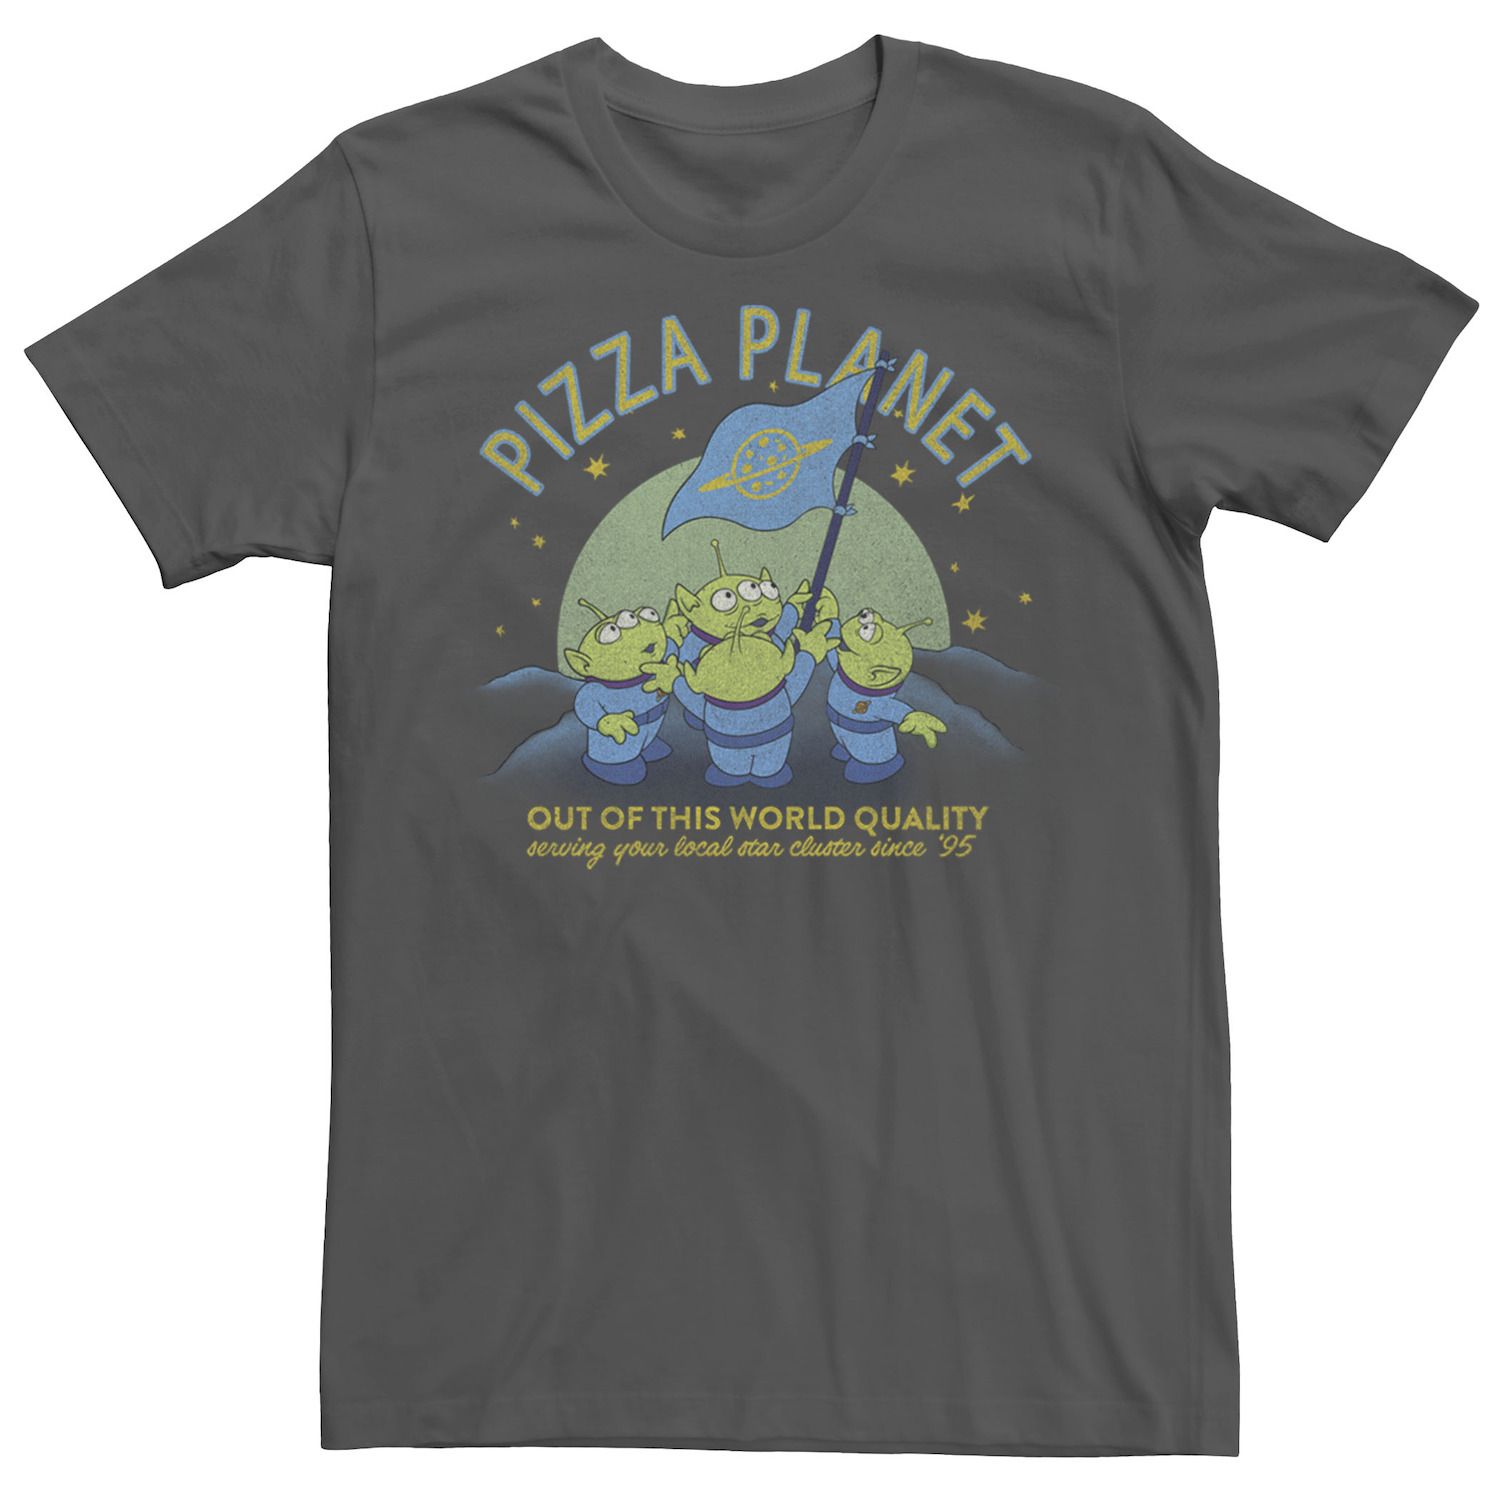 Мужская футболка с флагом «История игрушек Пицца Планета игрушек» Disney / Pixar мужская футболка планета пицца s черный